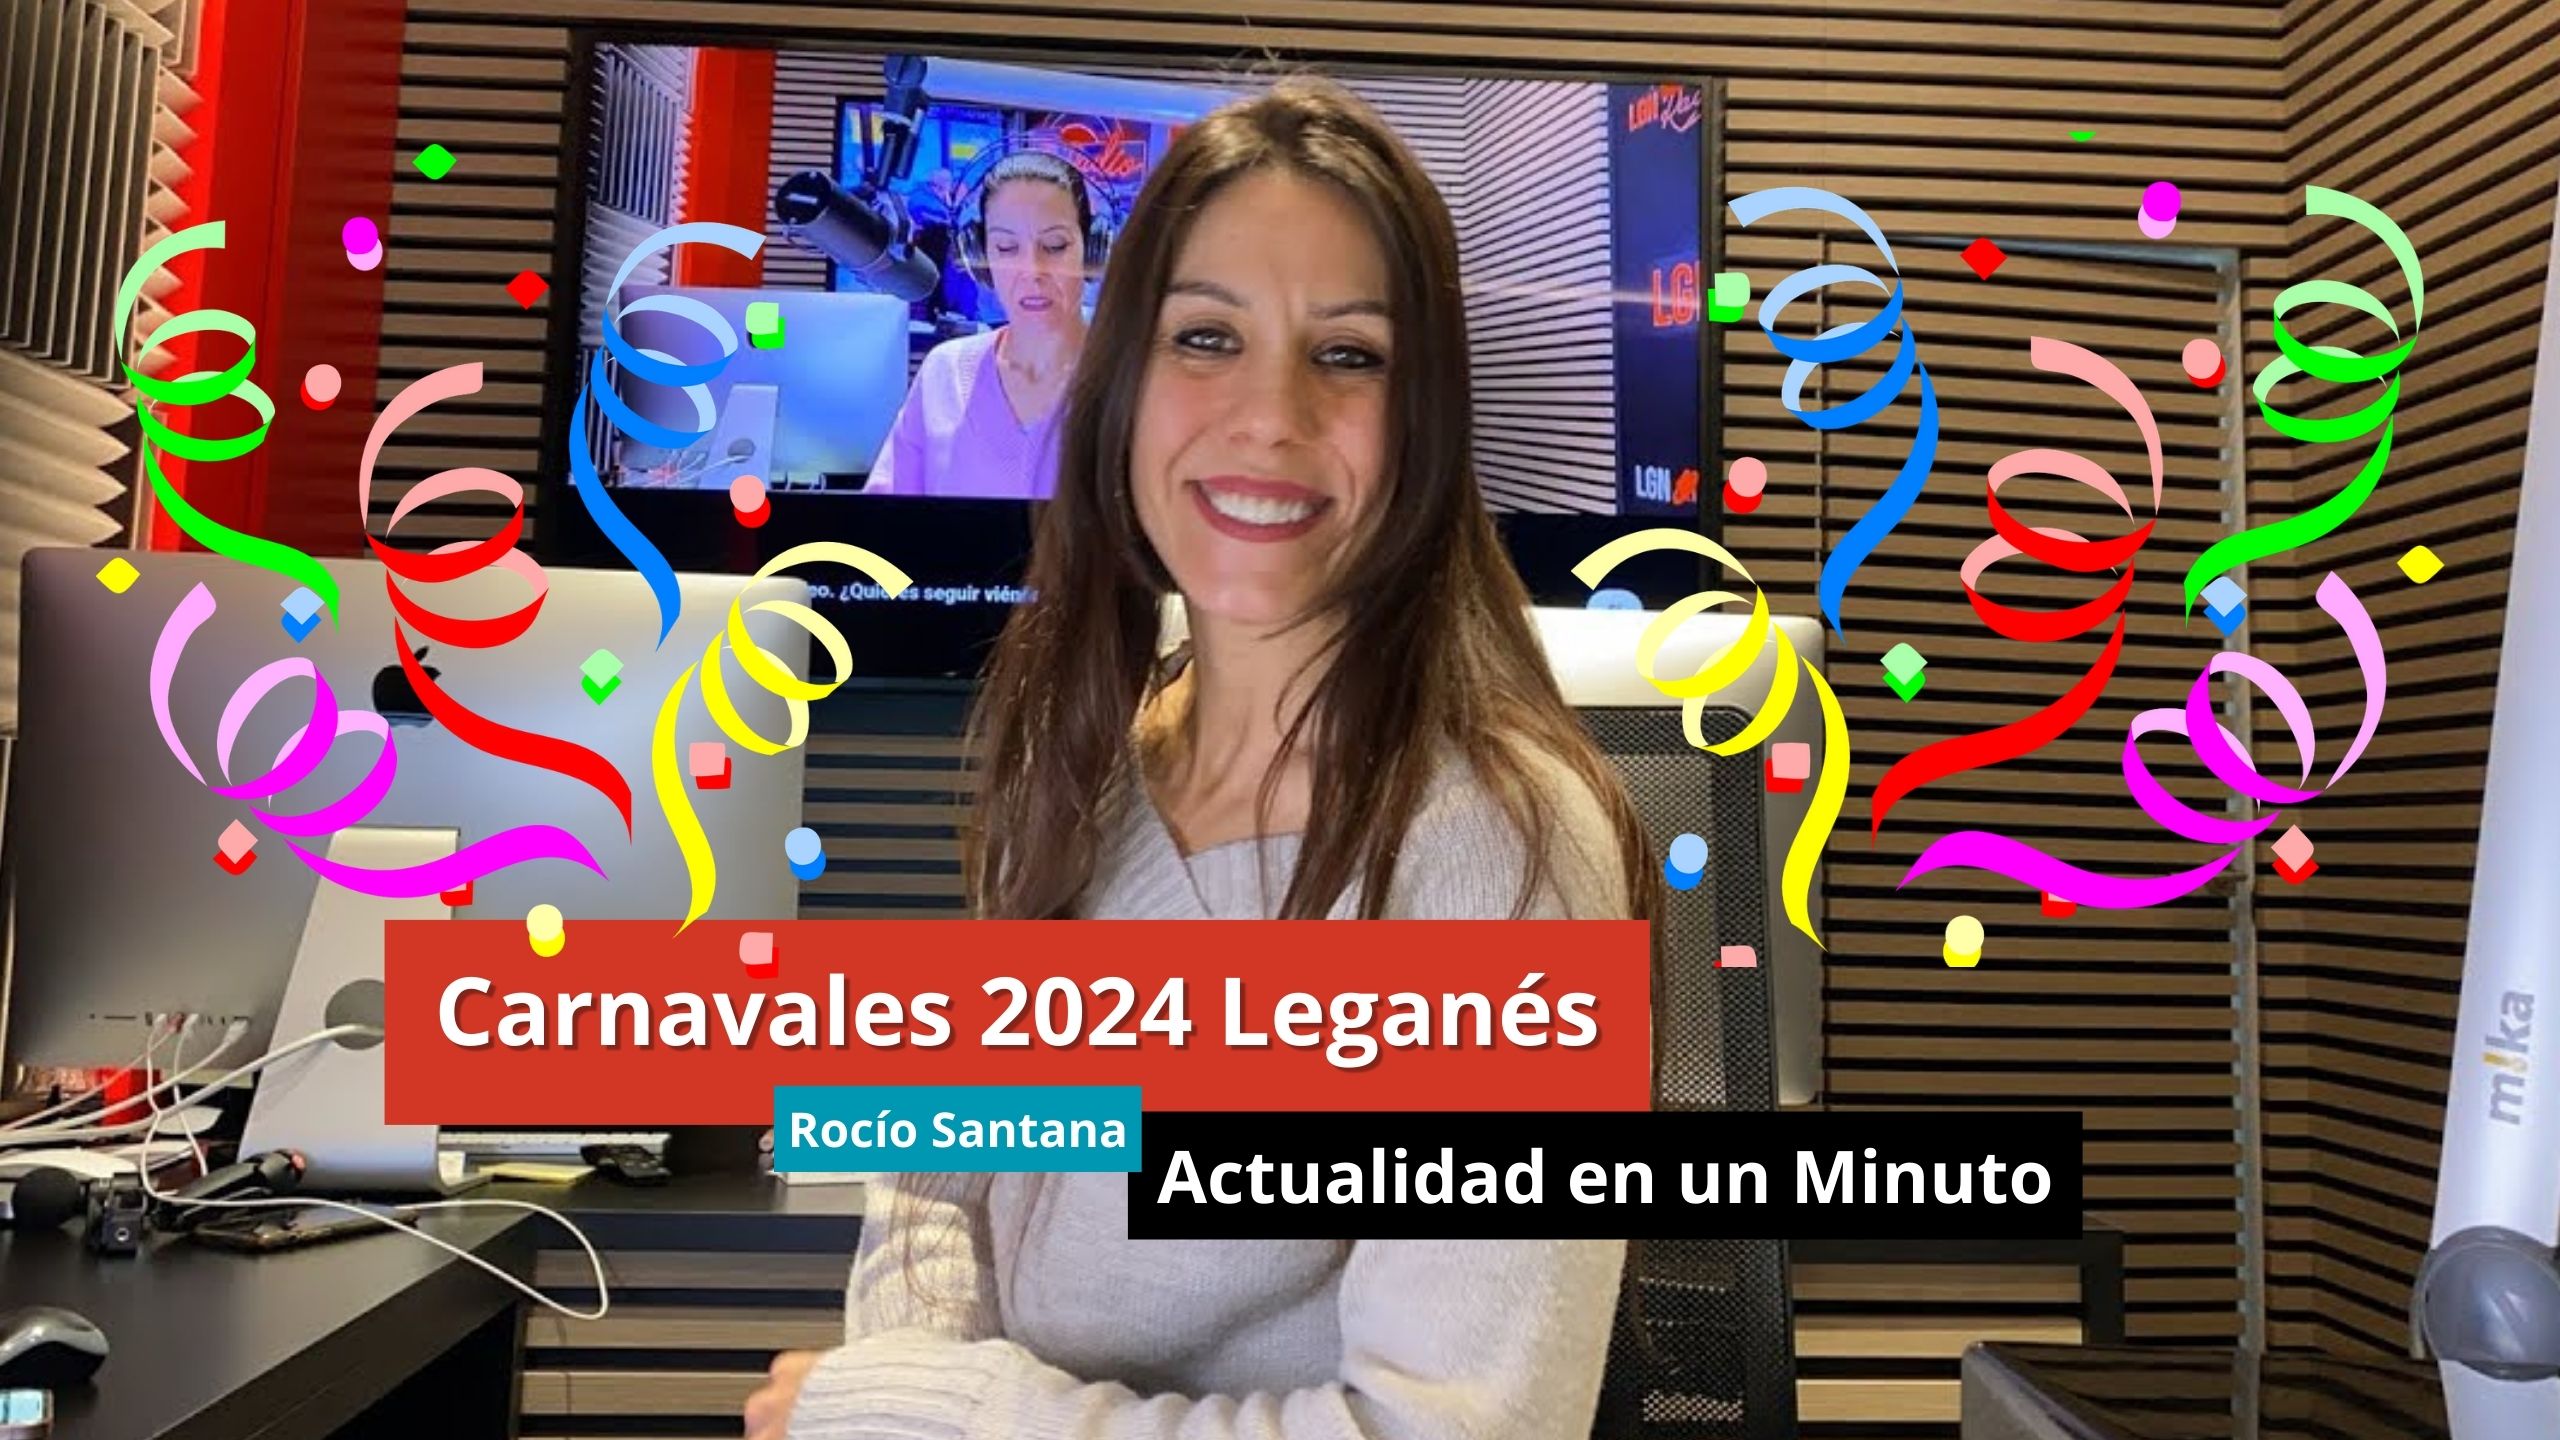 11-01-24 Carnavales 2024 Leganés - Actualidad en 1 minuto